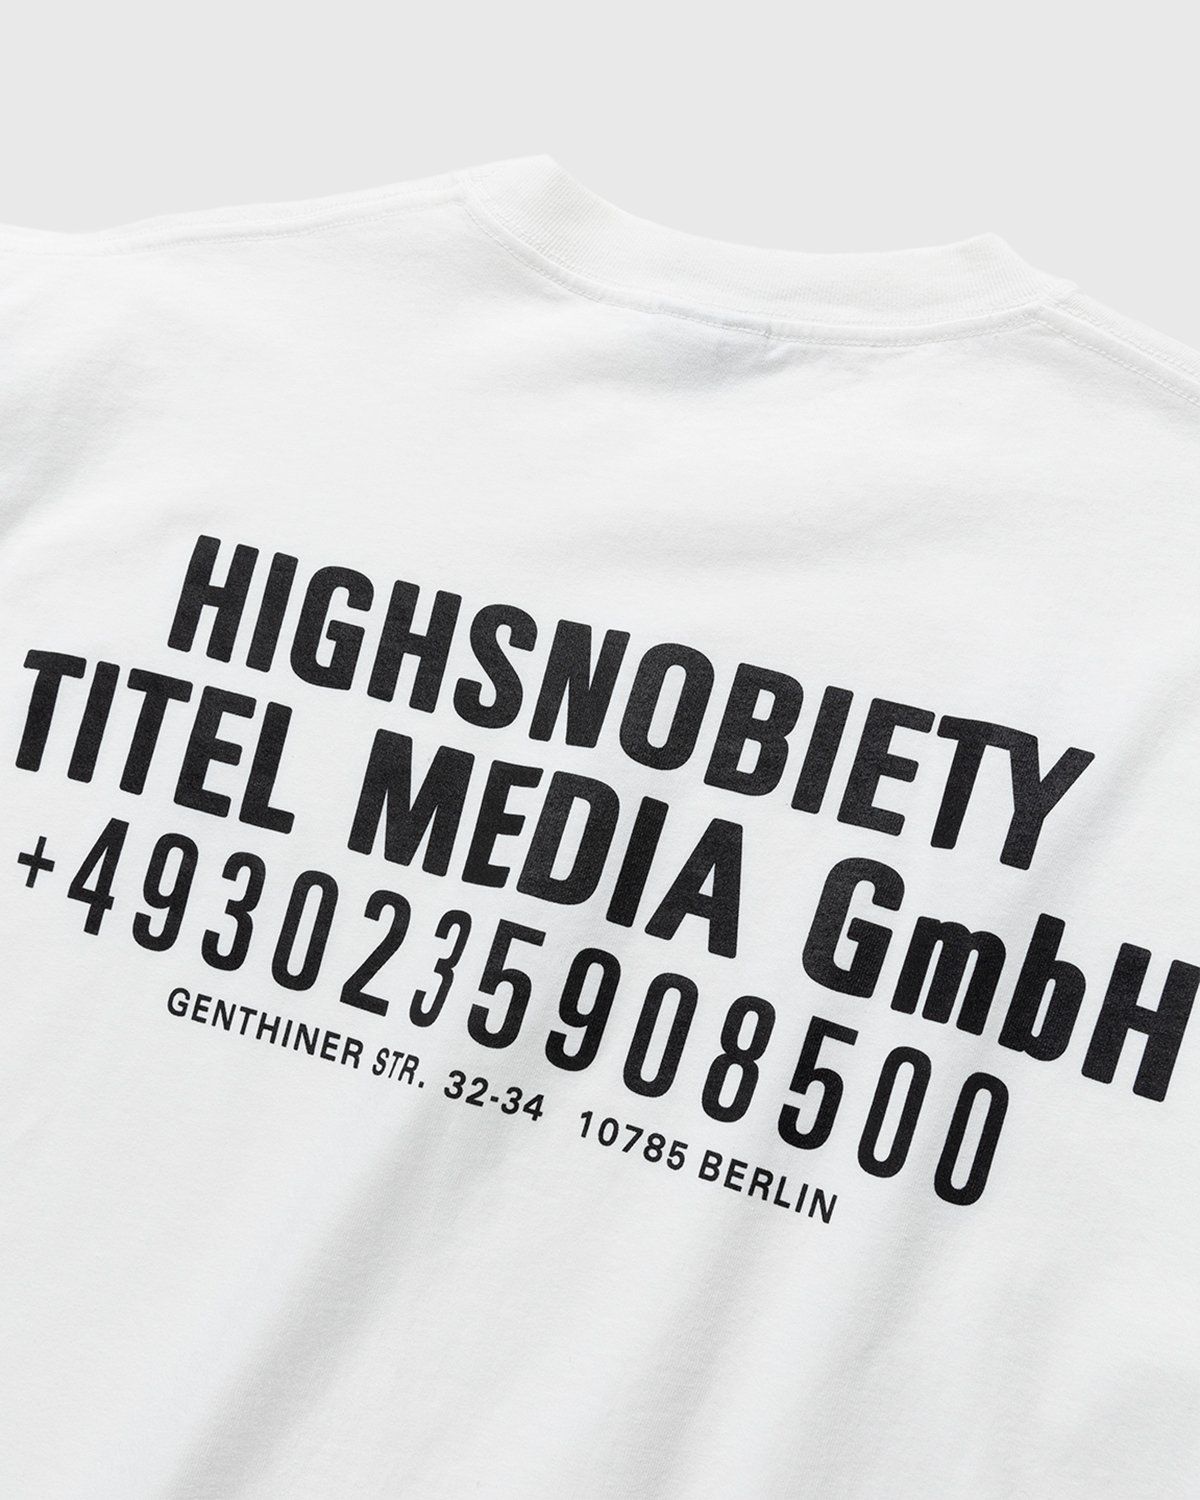 Highsnobiety – Titel Media GmbH T-Shirt White - T-shirts - White - Image 3